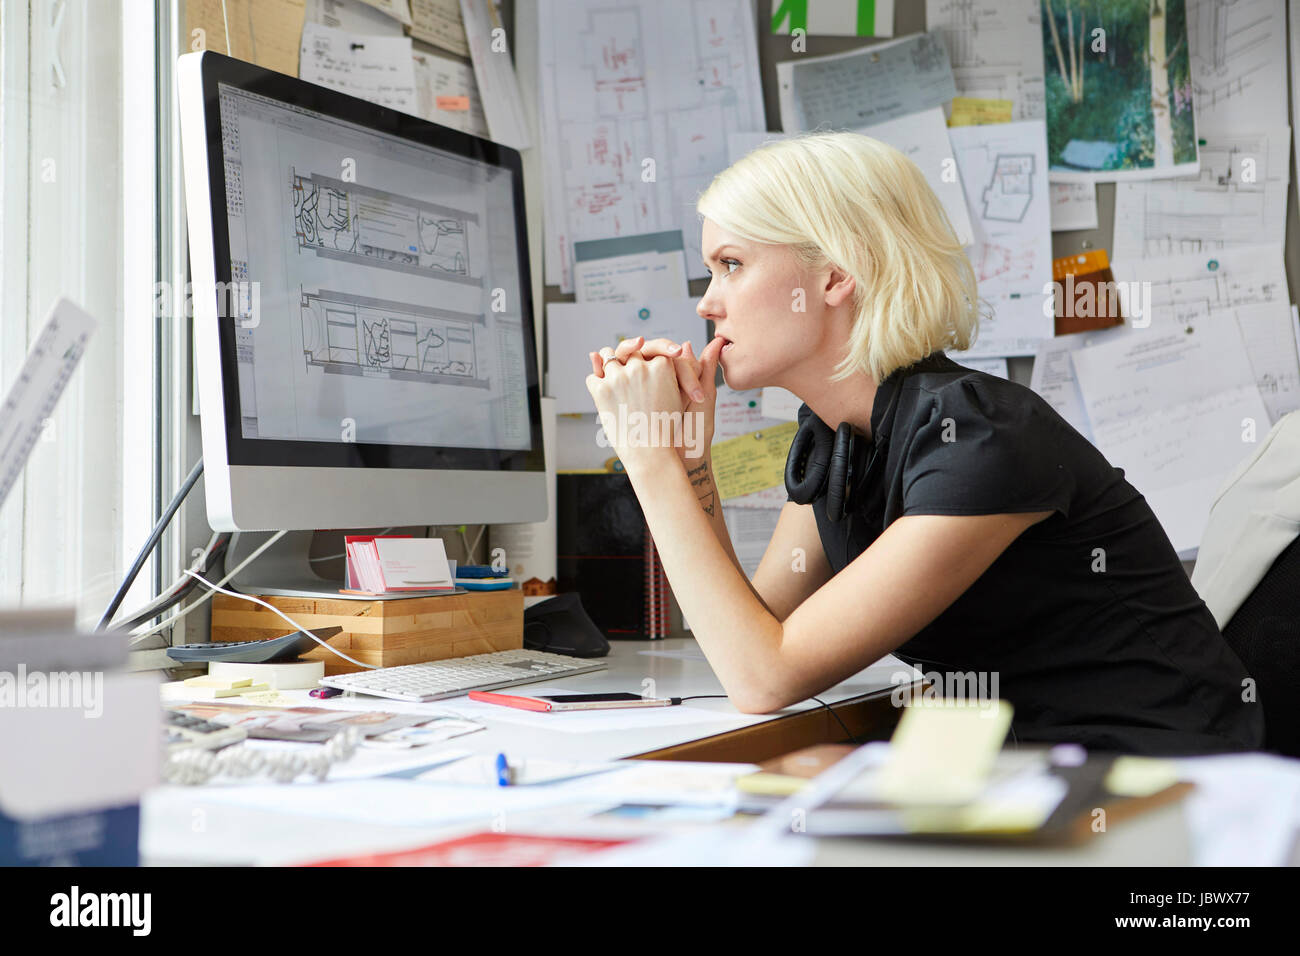 Female designer staring from office desk Stock Photo